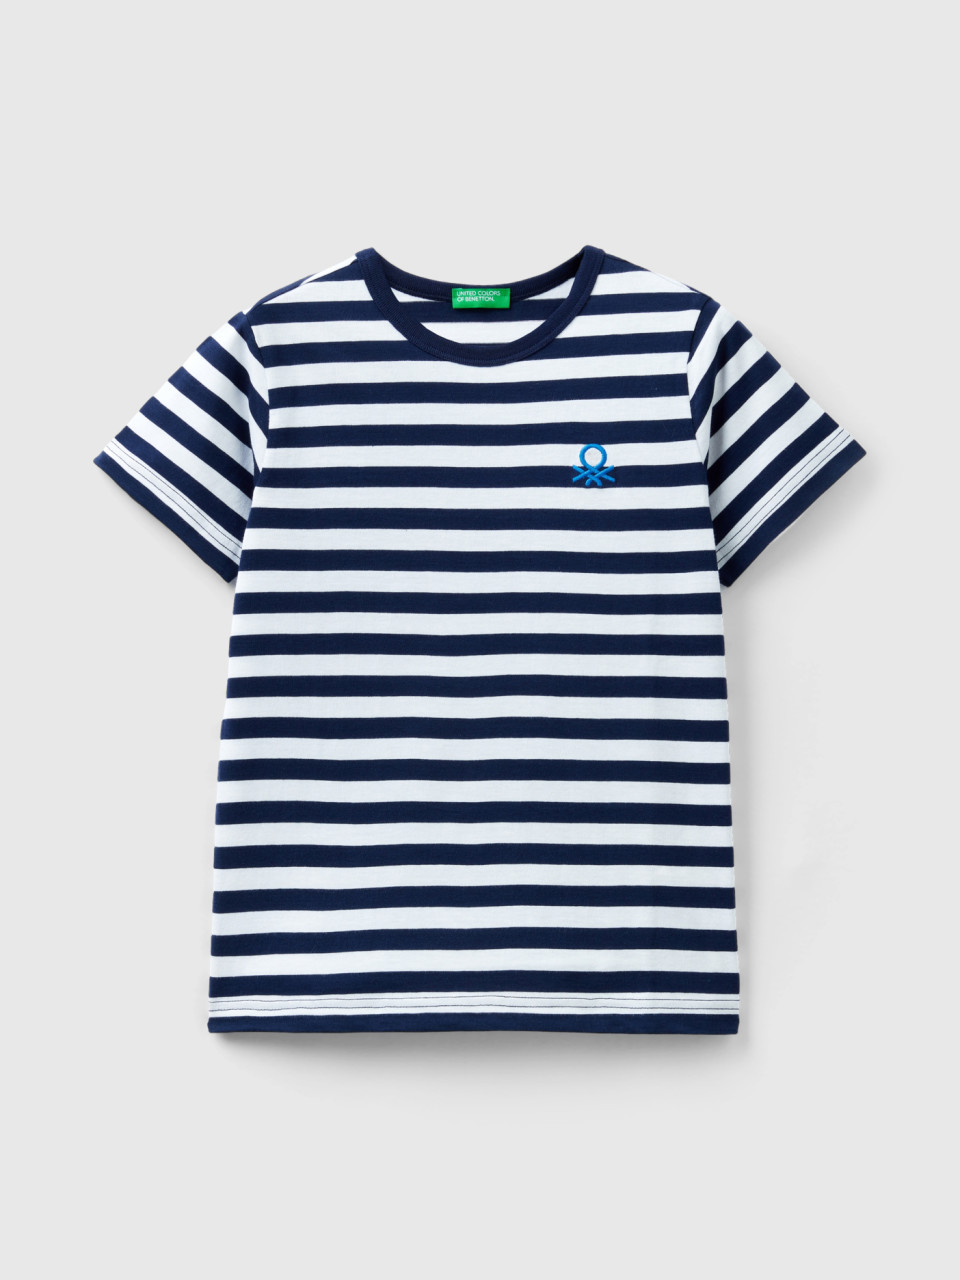 Benetton, Striped 100% Cotton T-shirt, Dark Blue, Kids